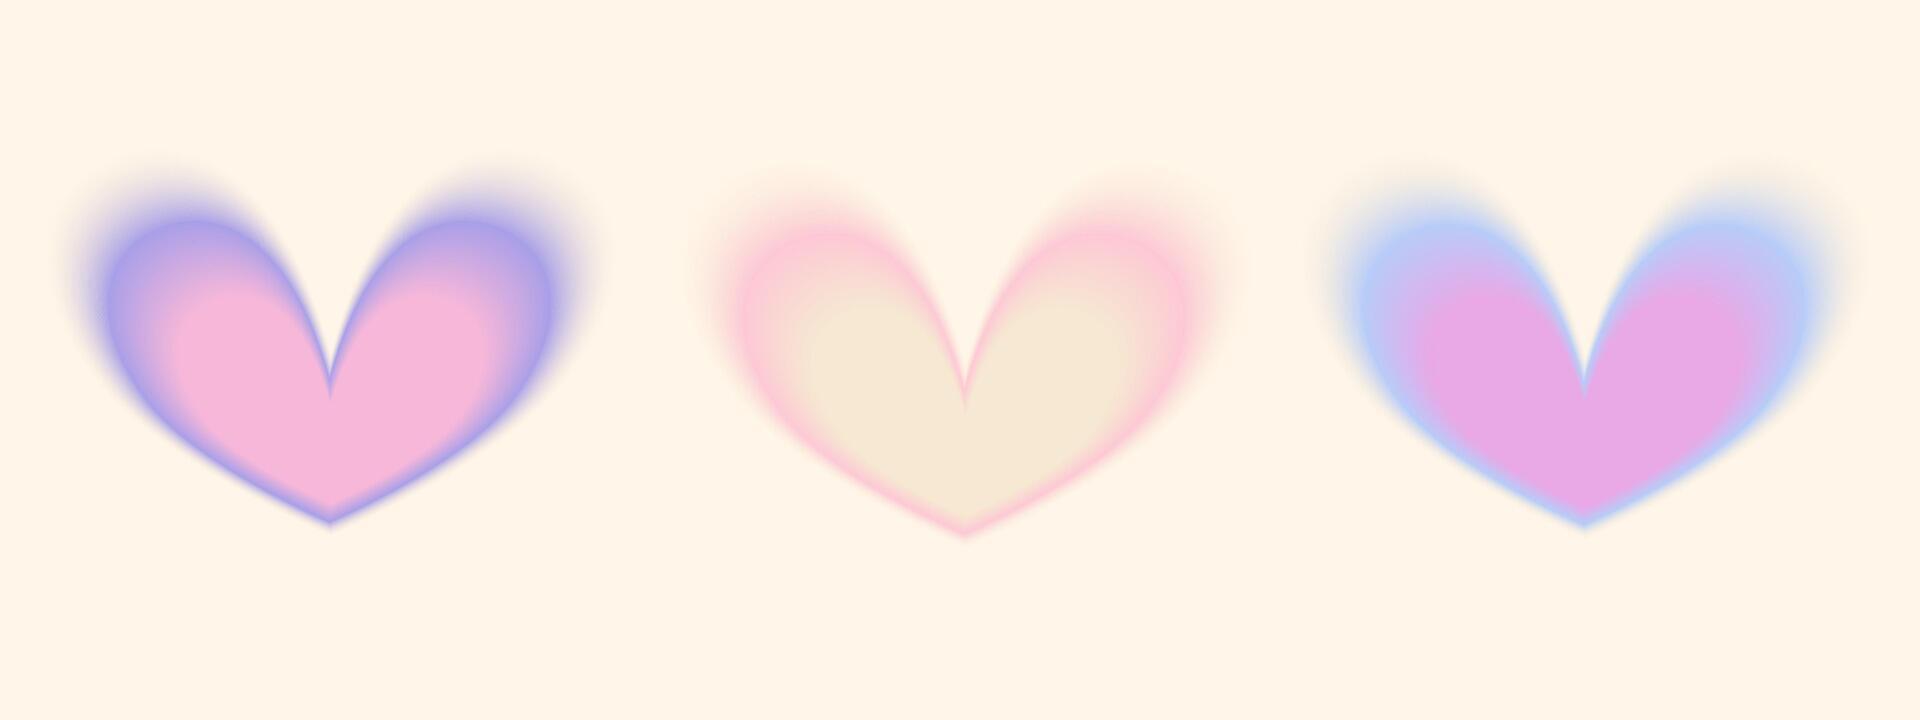 Gradient Y2k shape blur set. Heart blurry aesthetic y2k. Vector pastel form illustration. Aura gradient shape